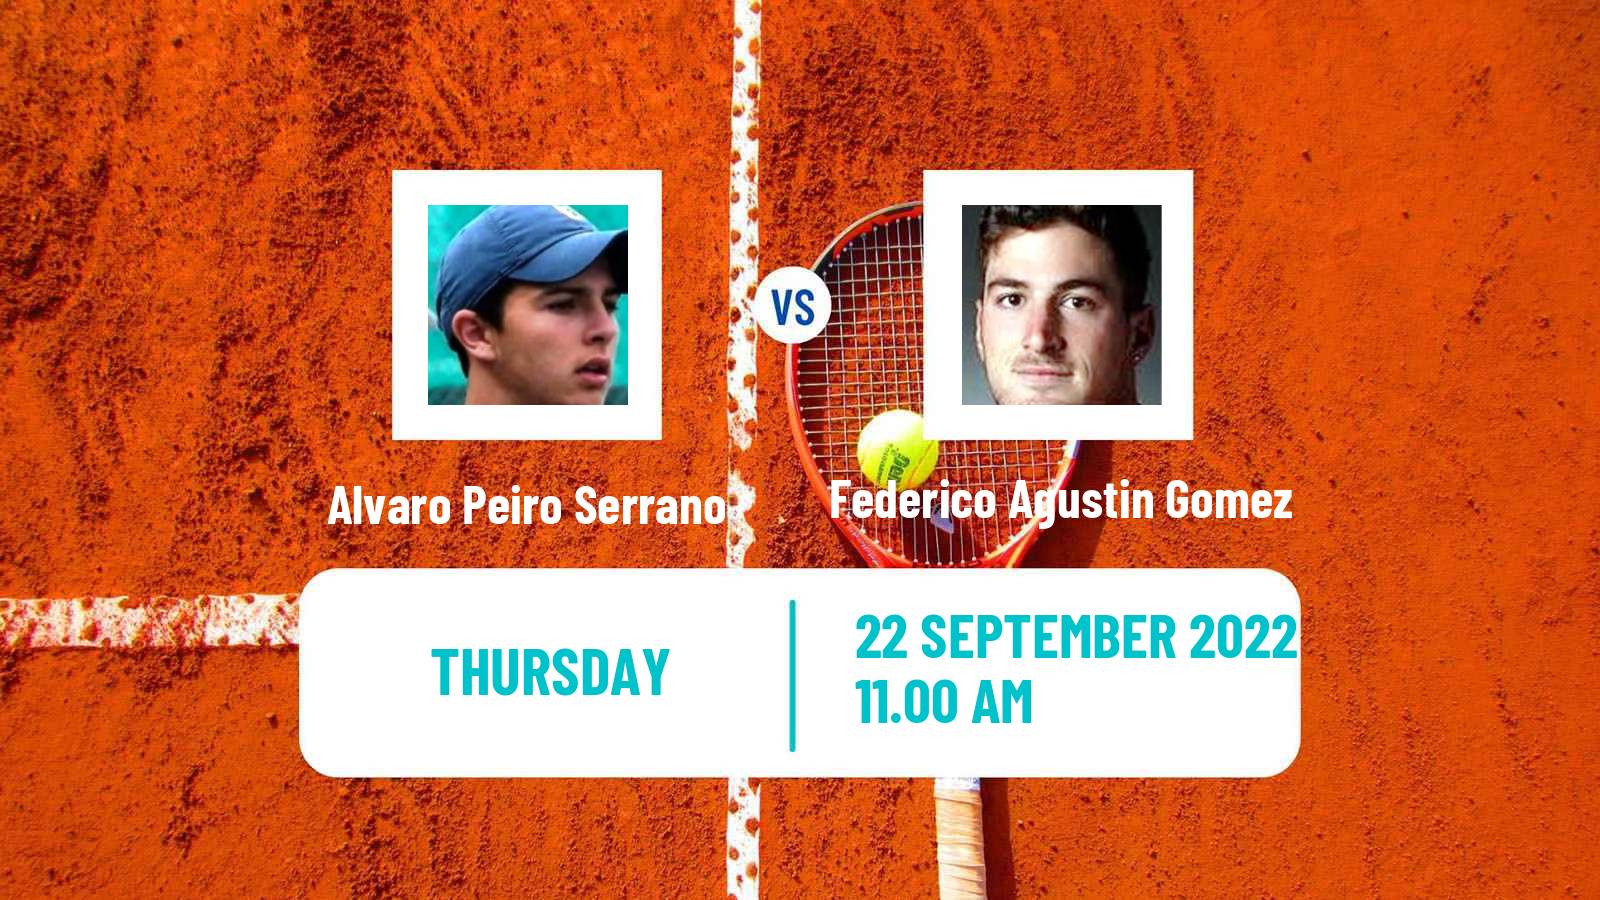 Tennis ITF Tournaments Alvaro Peiro Serrano - Federico Agustin Gomez